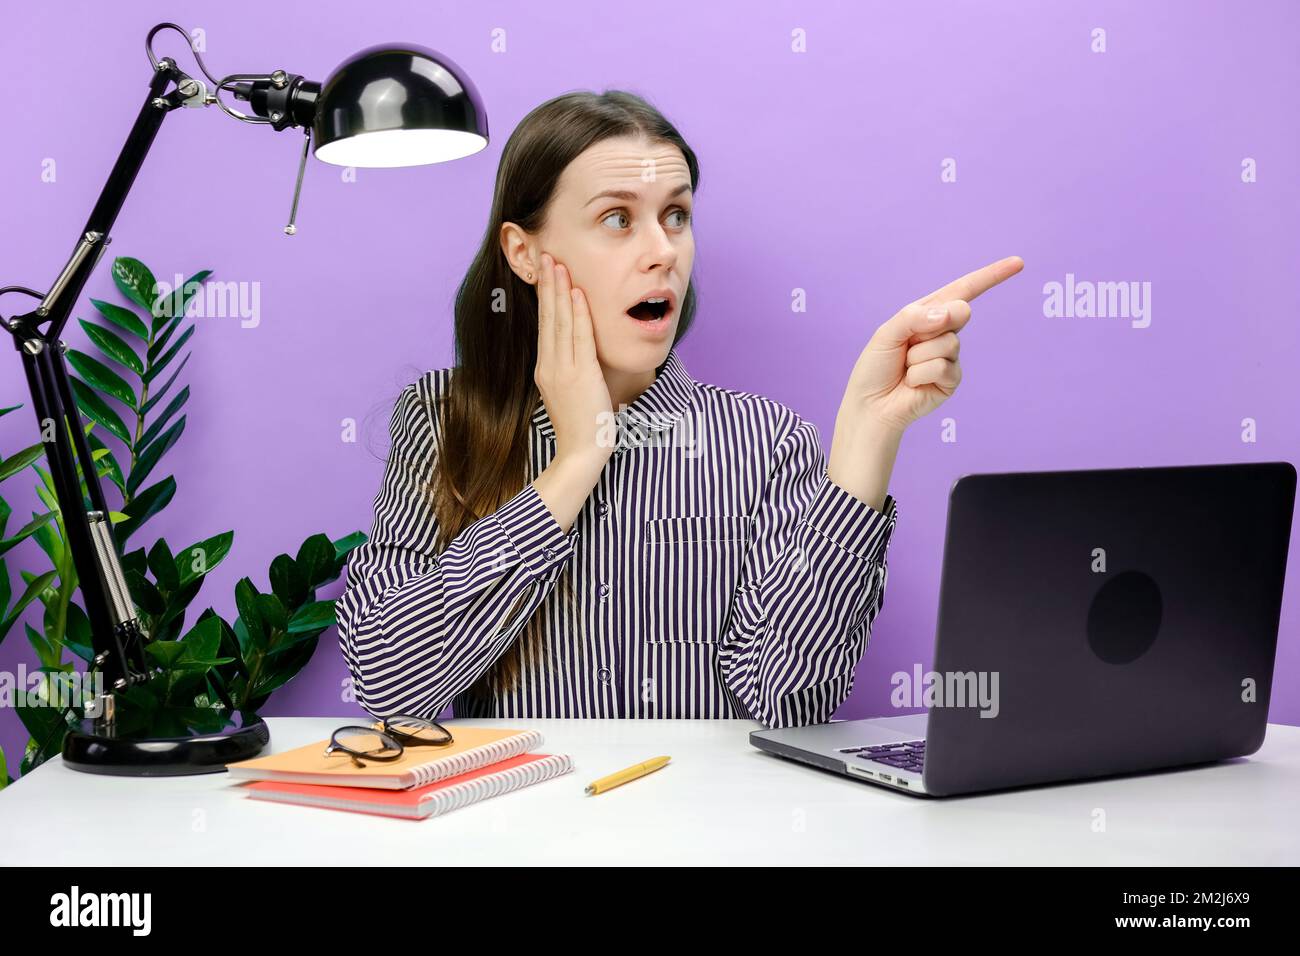 Schockierte, erfolgreiche Mitarbeiterin Geschäftsfrau 20s sitzt am weißen Büroschreibtisch mit Laptop Zeigefinger beiseite auf Arbeitsbereich halten Kopf, posieren Stockfoto